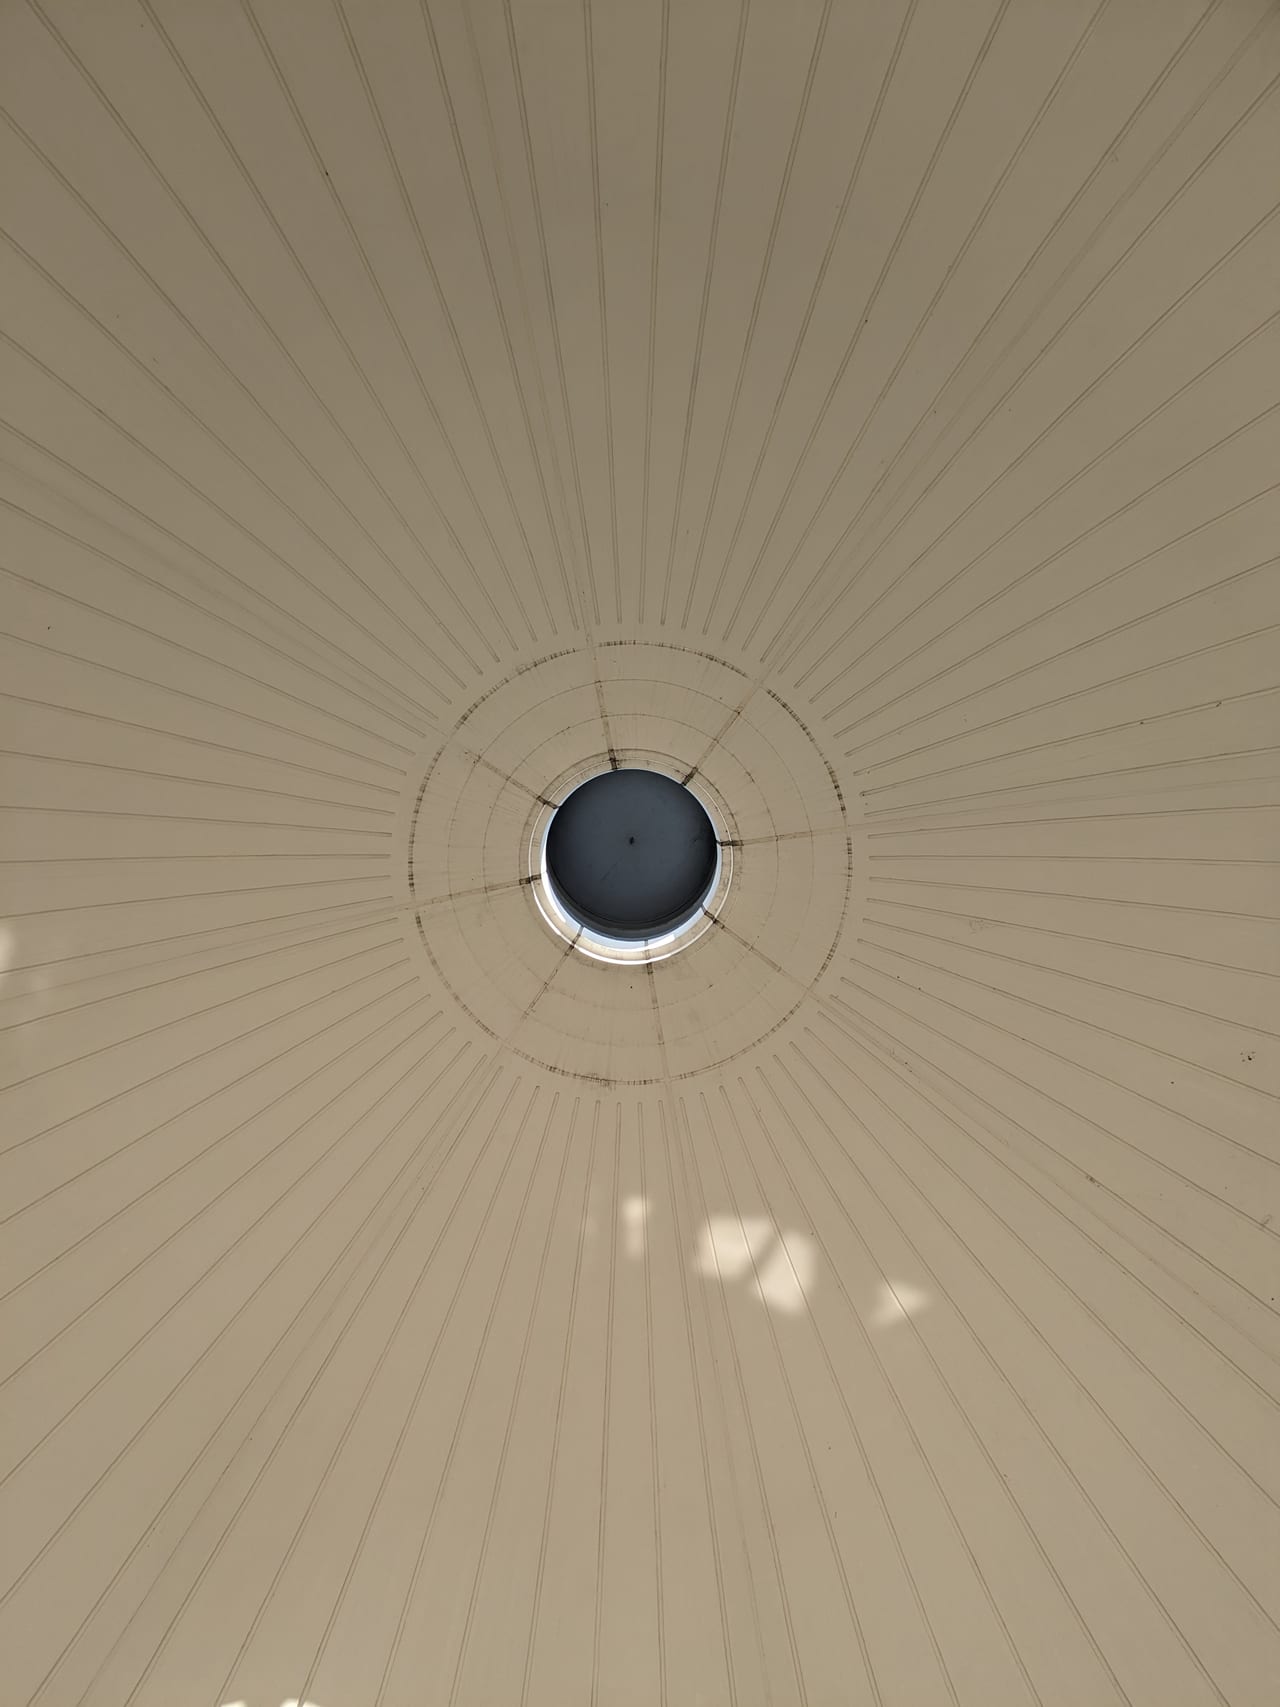 済生館時計台ドーム天井